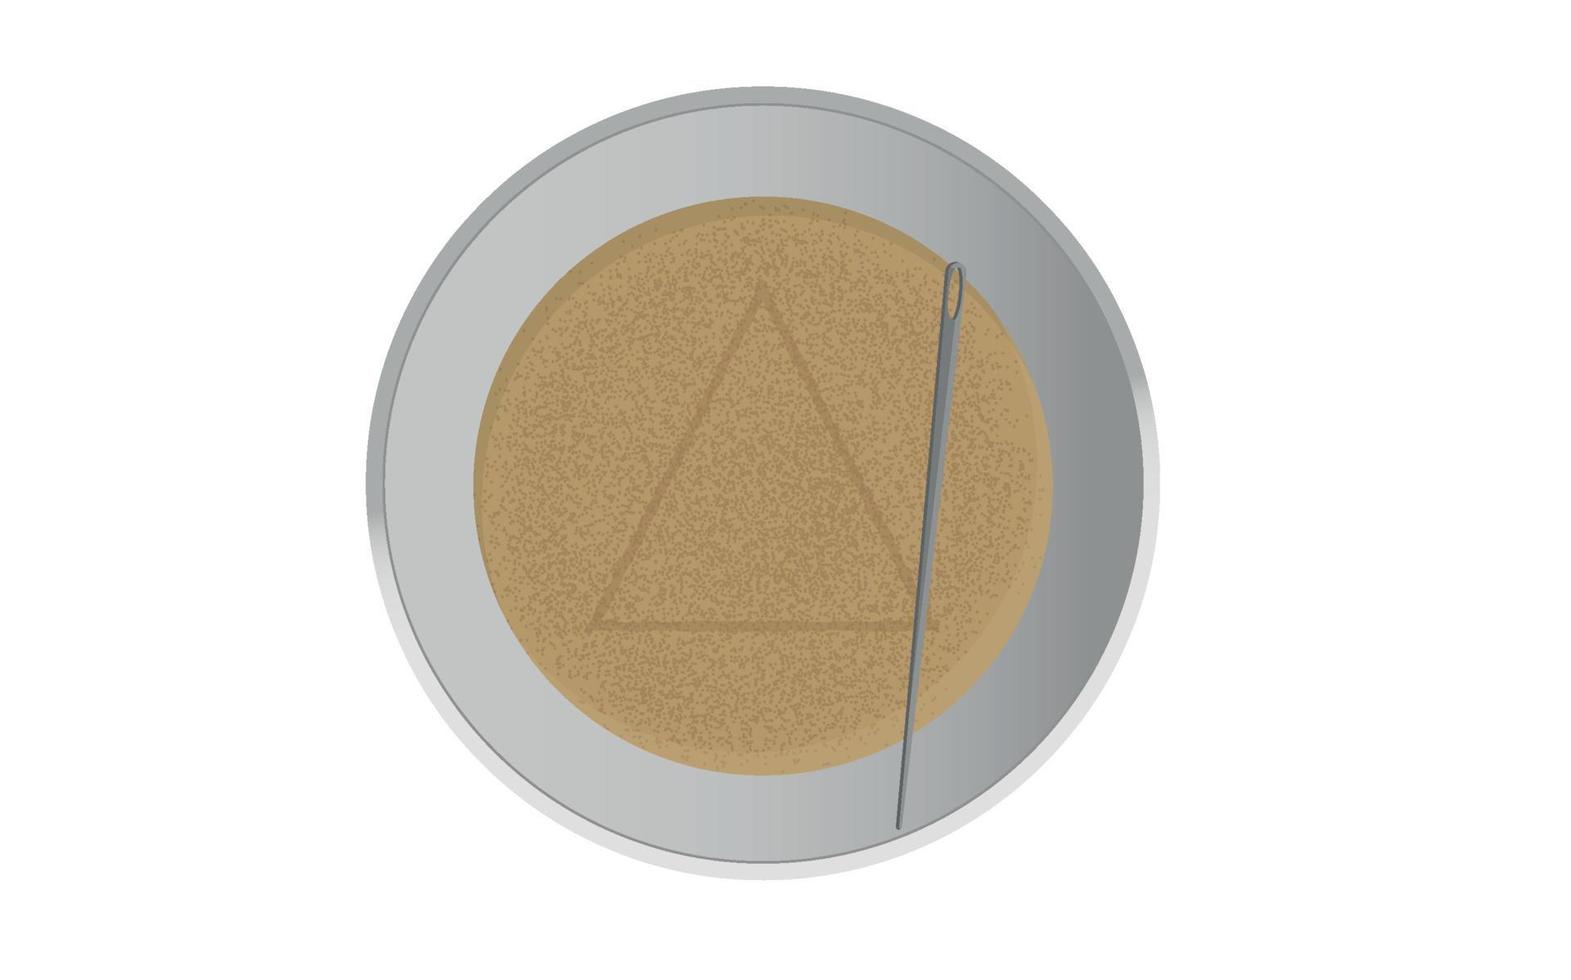 koreaanse snoep in driehoek vorm dalgon vierkante vorm met naald om inktvis spel te spelen op witte achtergrond. vector illustratie